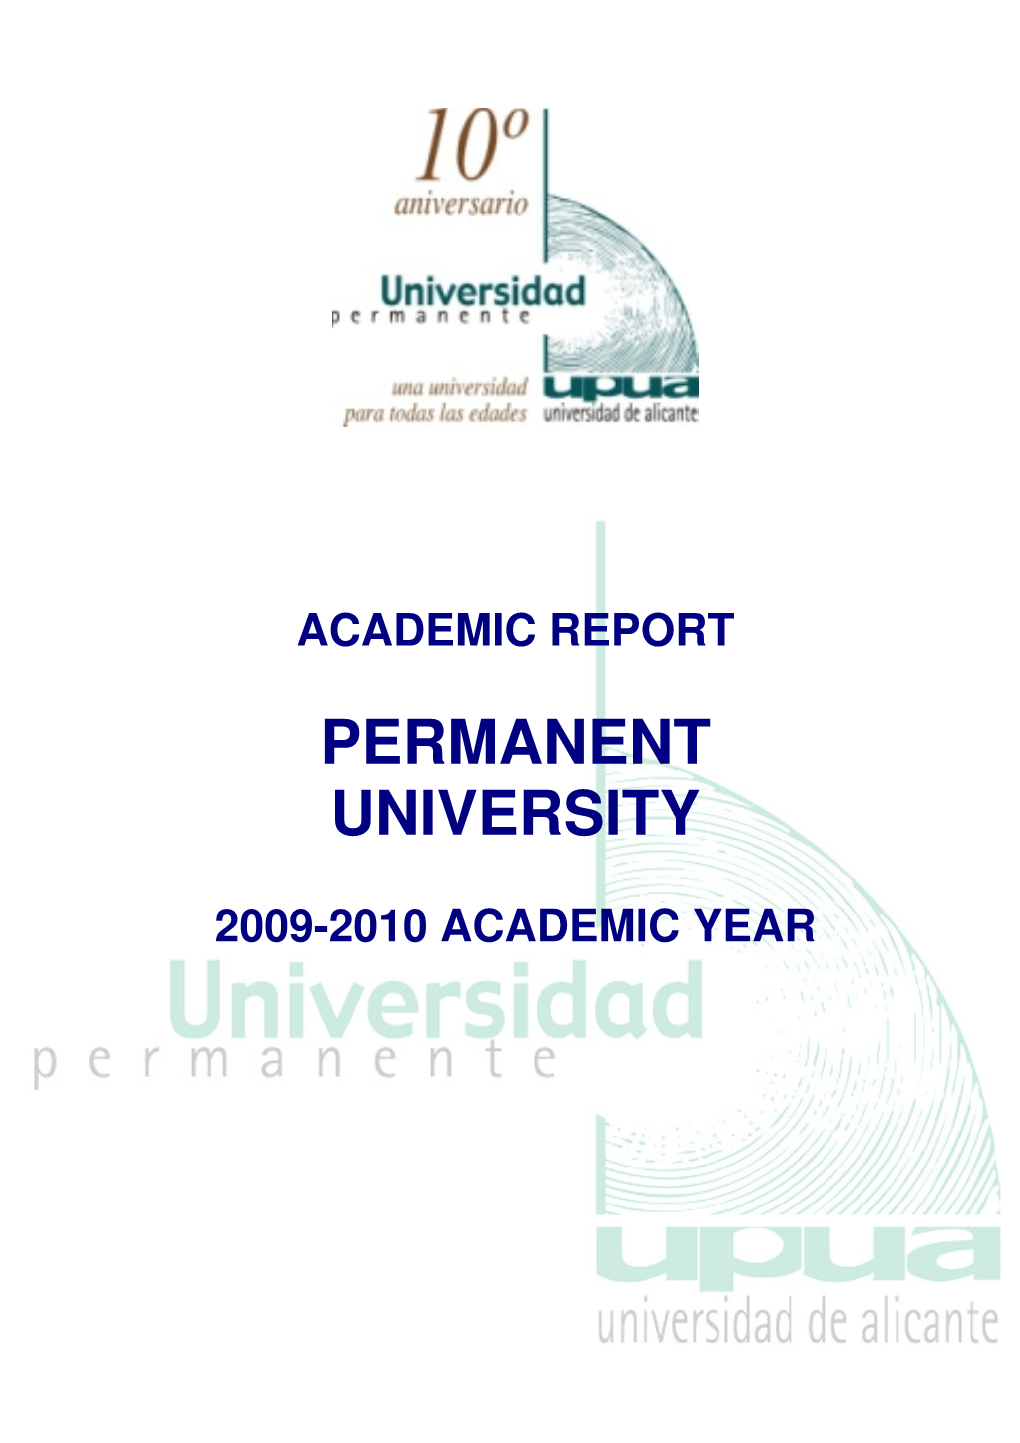 Permanent University